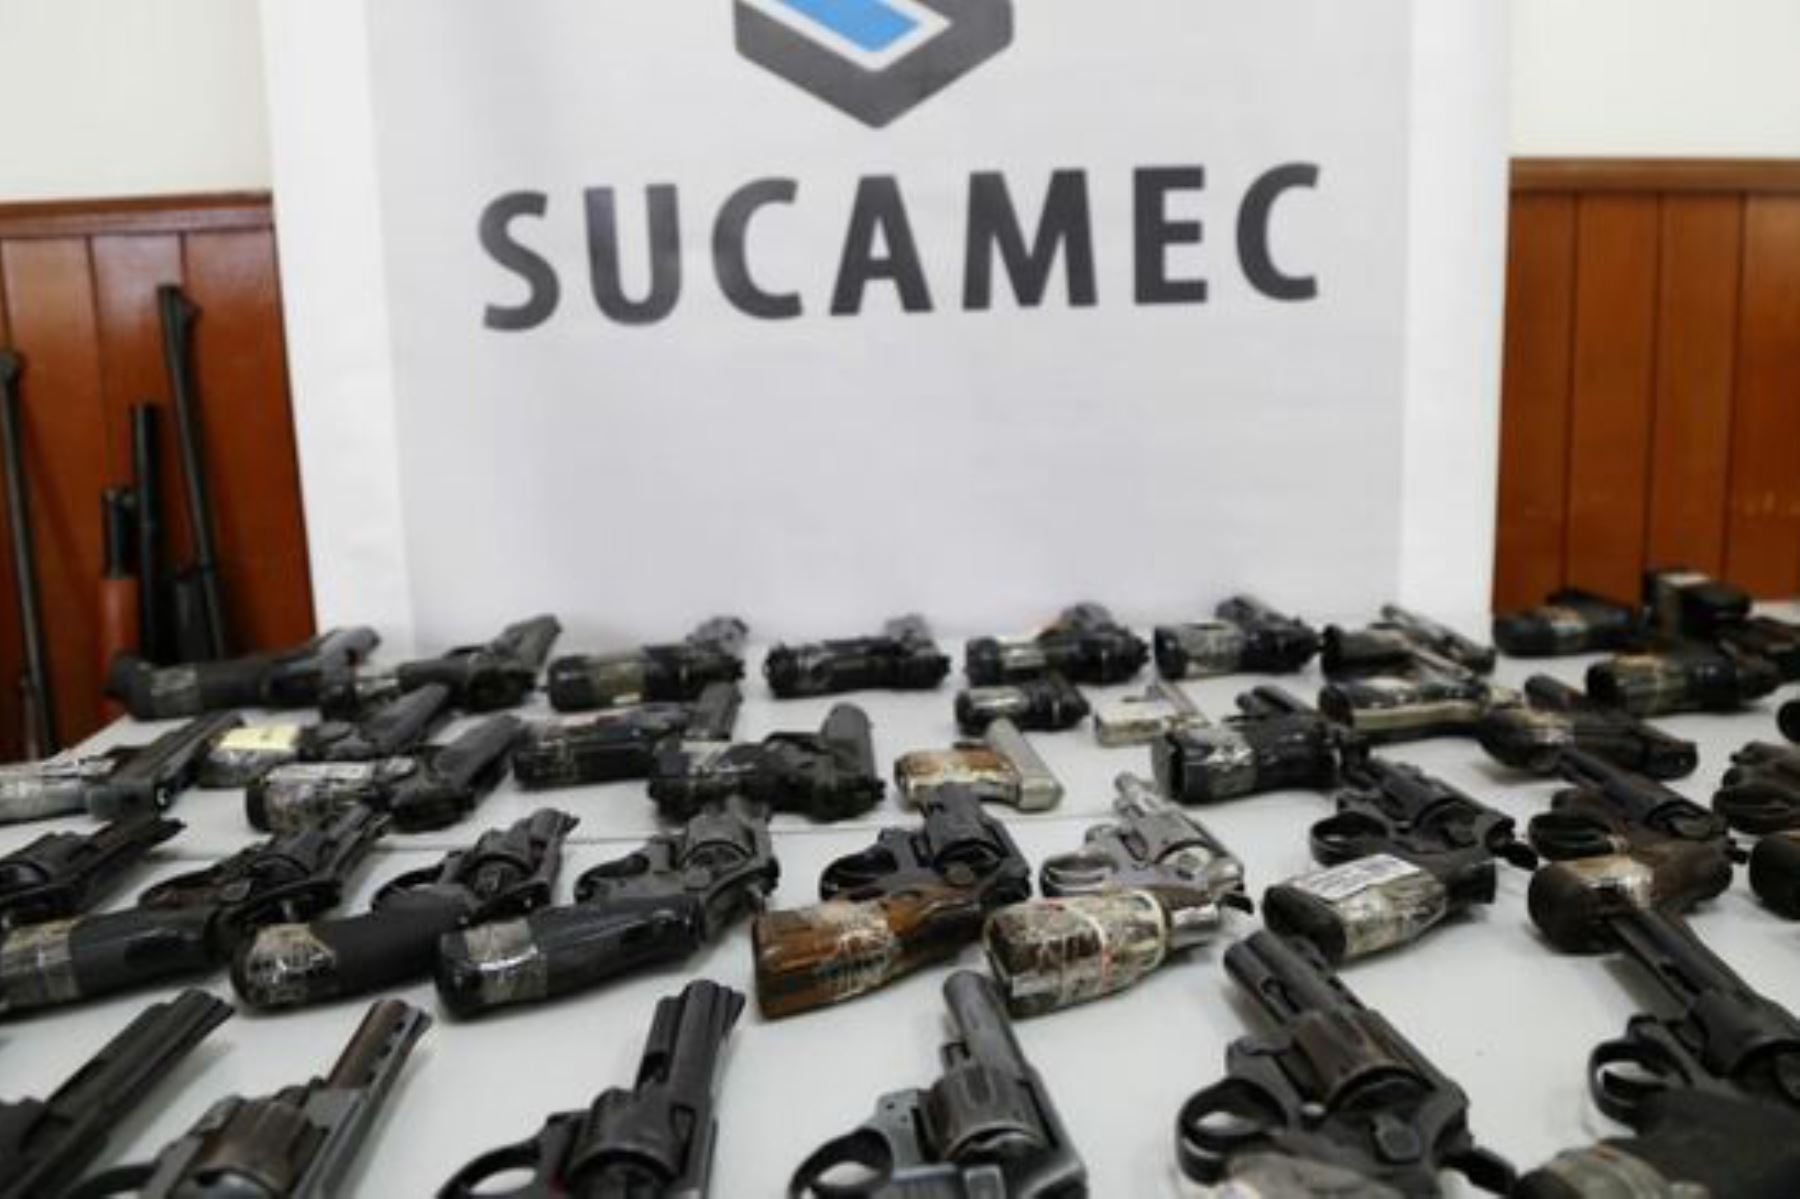 Las empresas que se dedican a la venta y comercialización de armas de fuego en el Perú deben estar completamente autorizadas por la Sucamec. Foto: ANDINA/Difusión